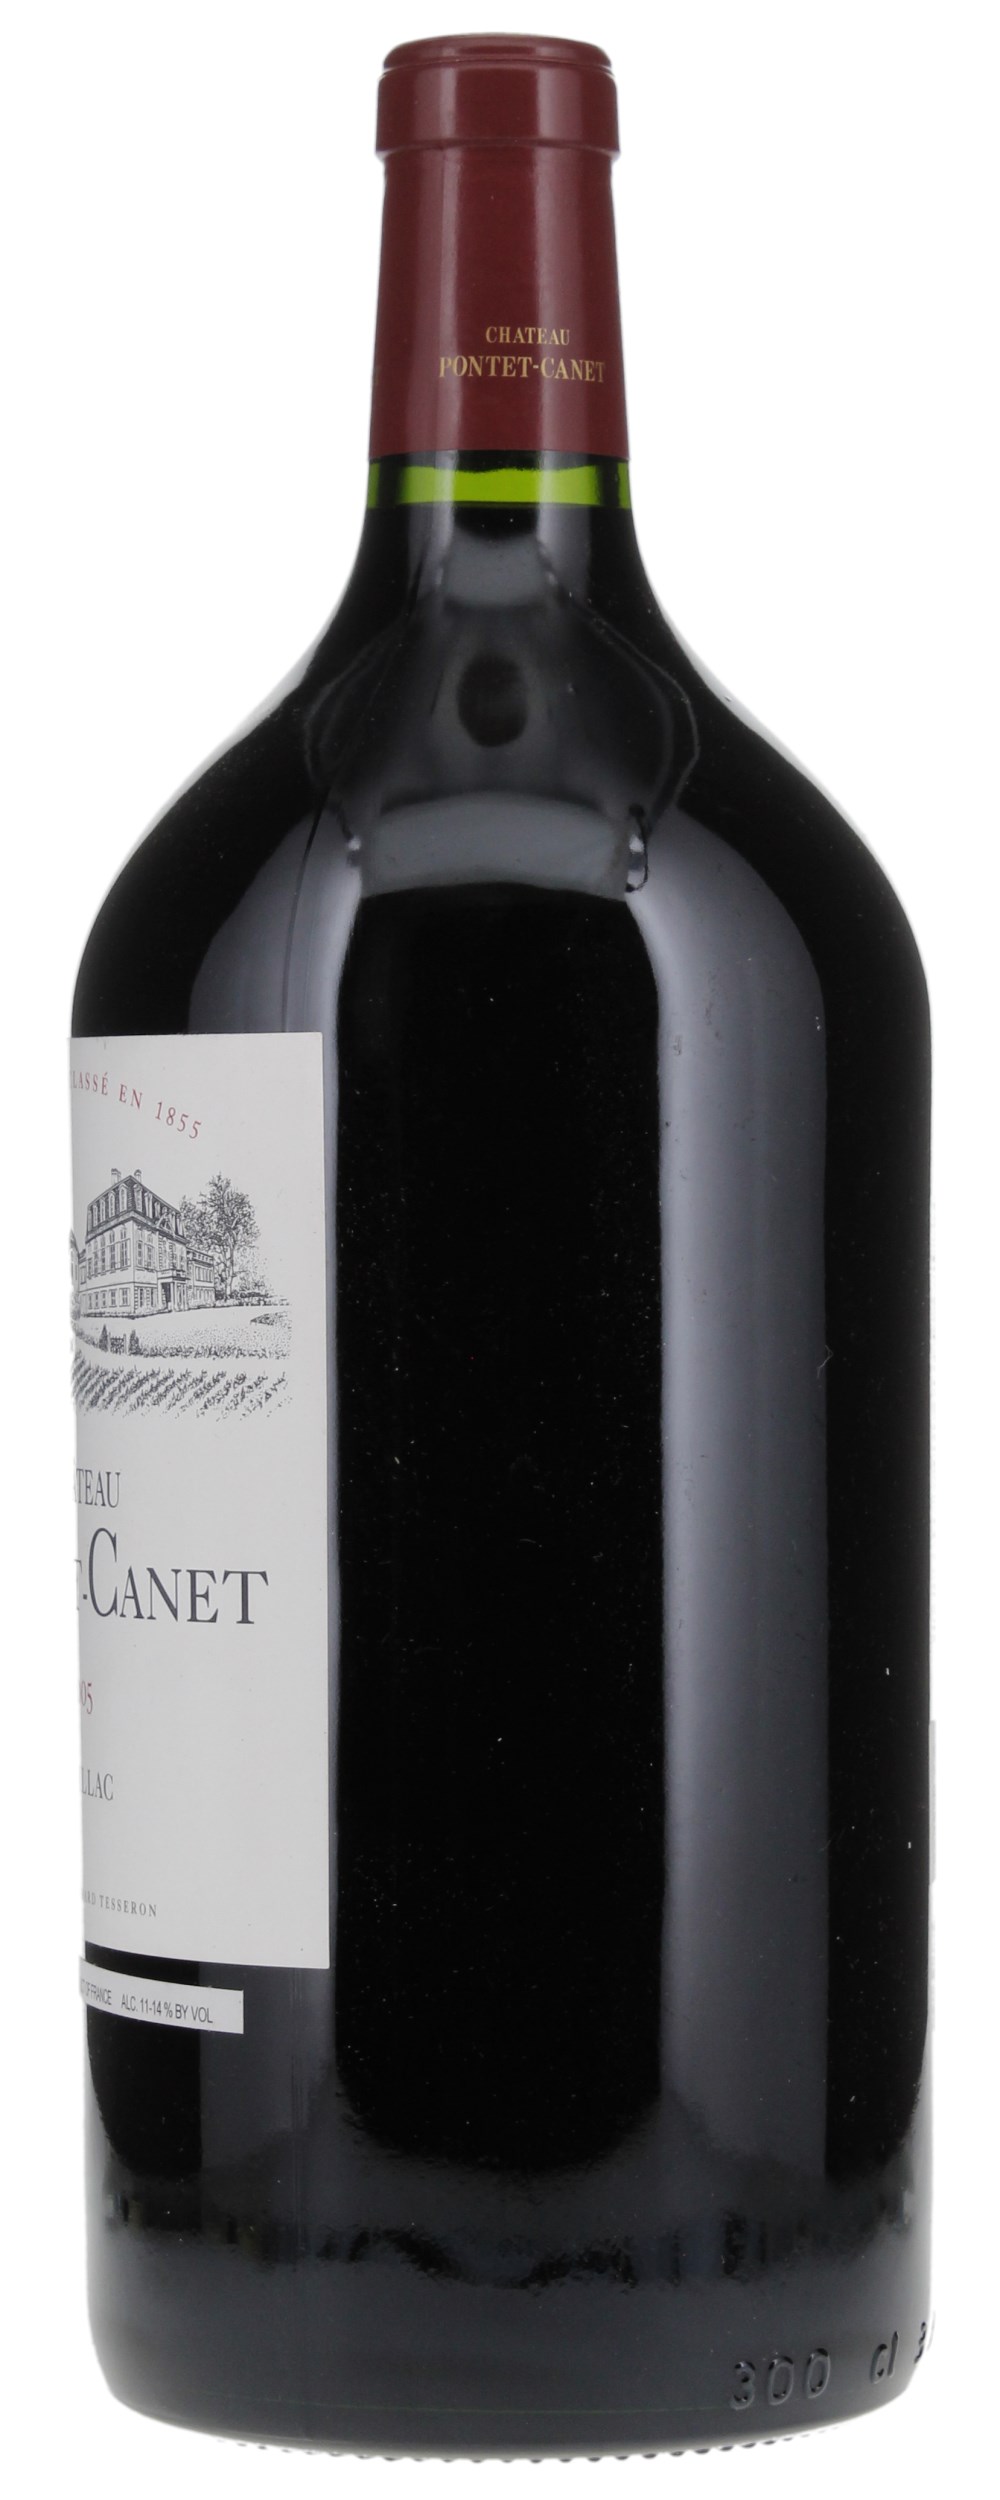 2005 Château Pontet-Canet, 3.0ltr